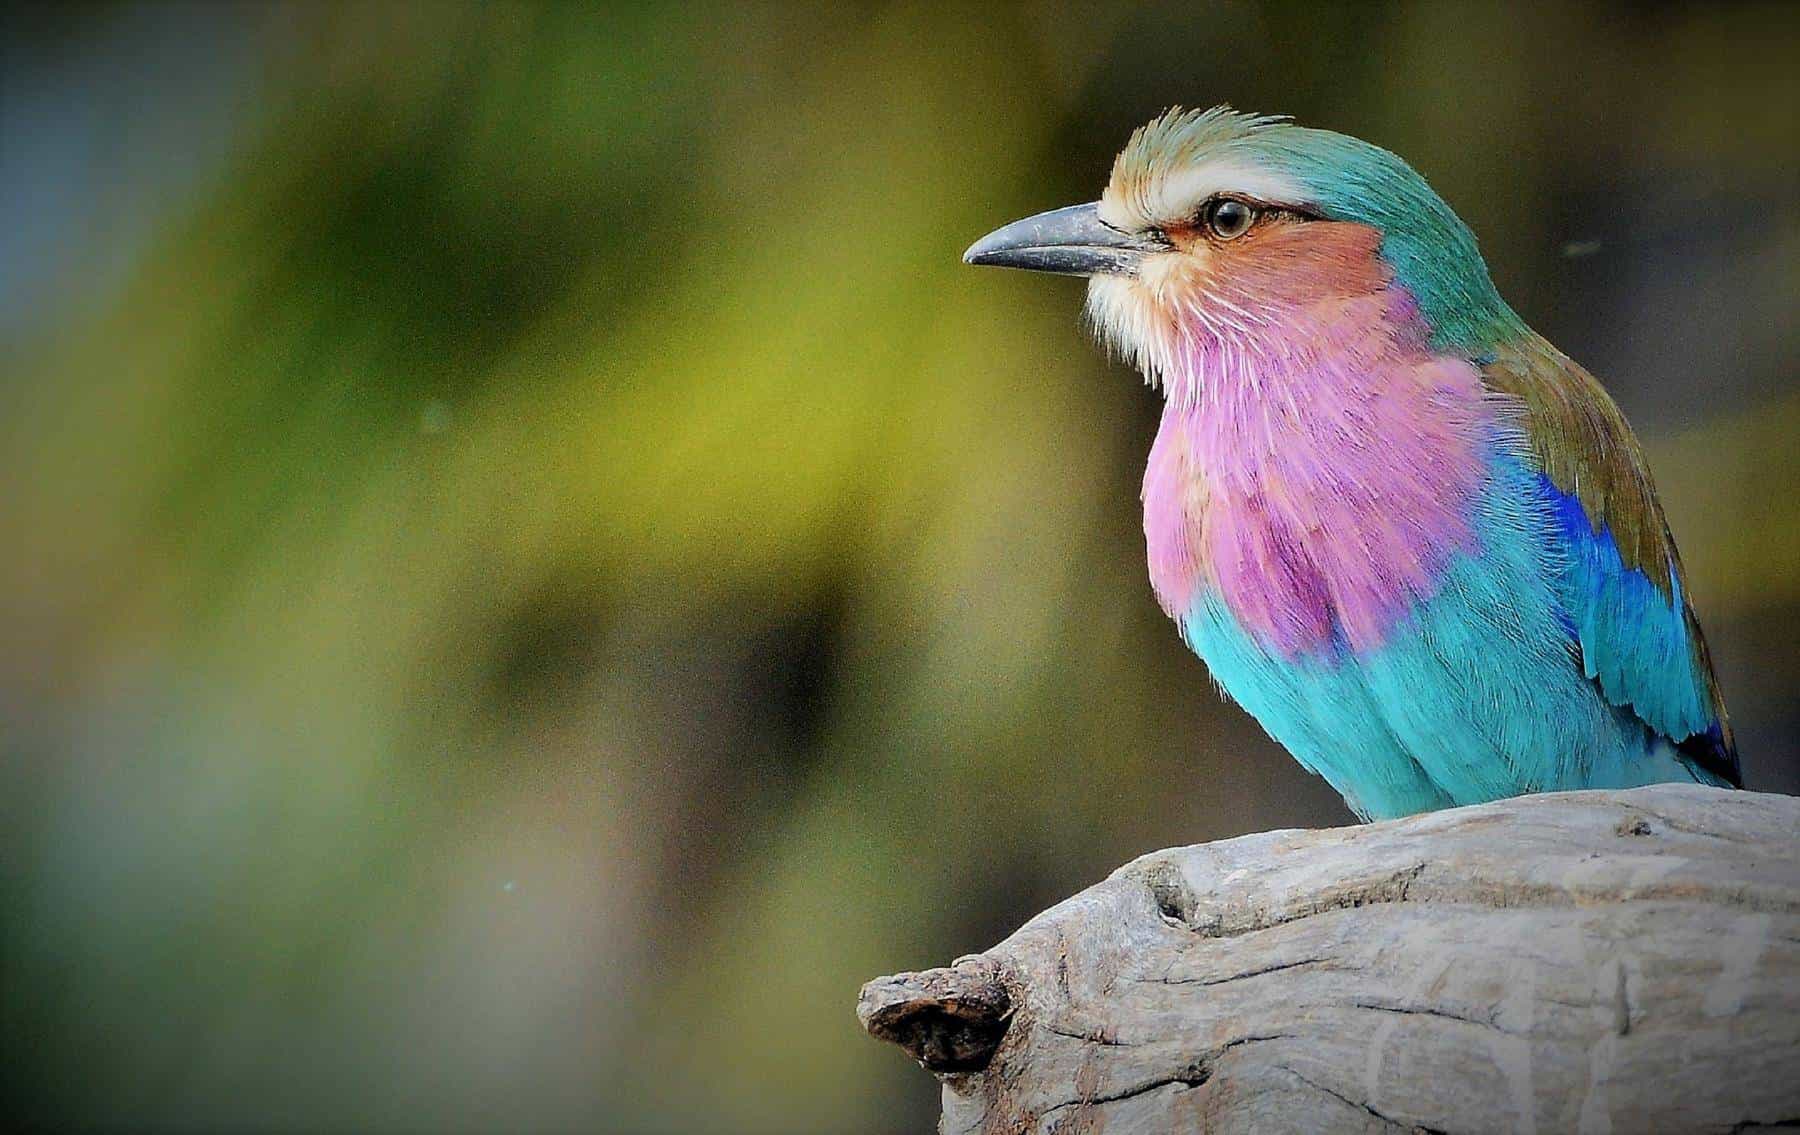 Bird watching safari in Tanzania